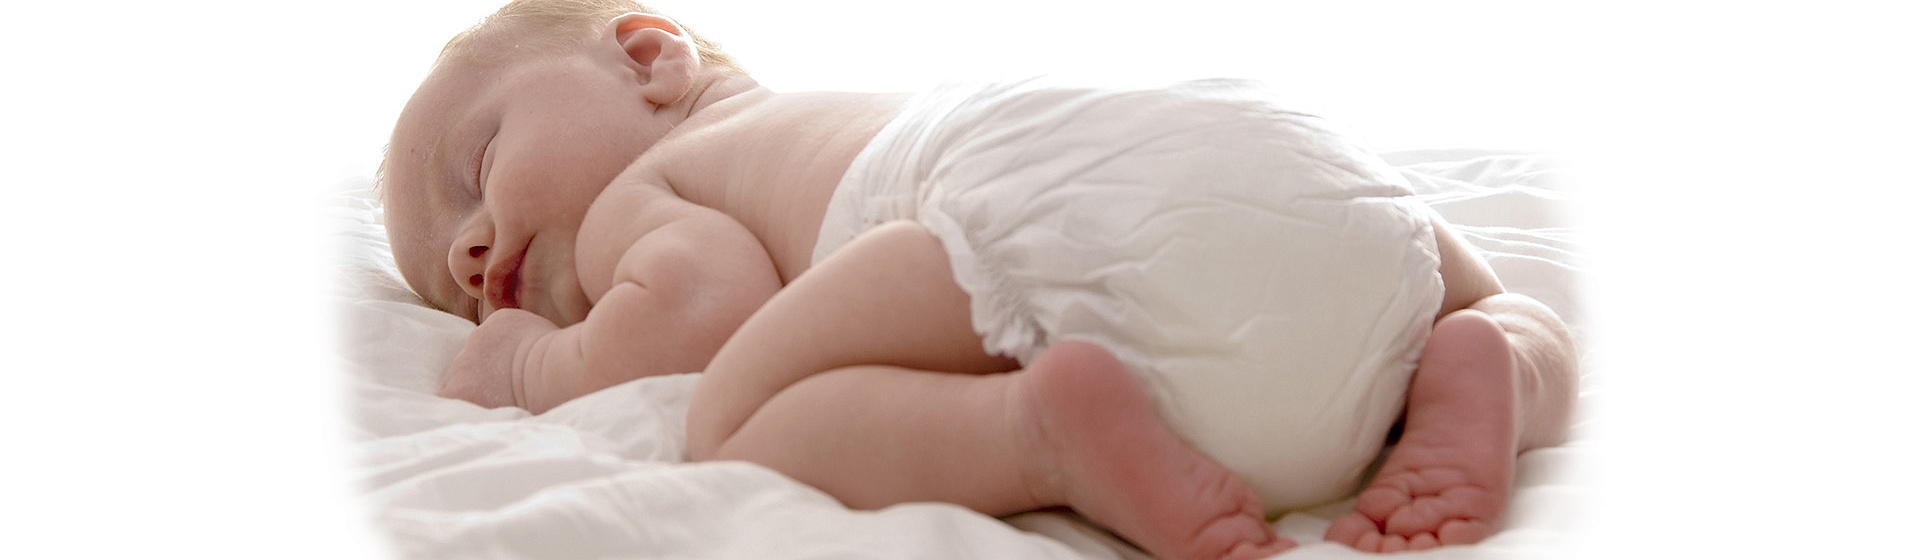 В каком положении должен спать новорожденный ребенок